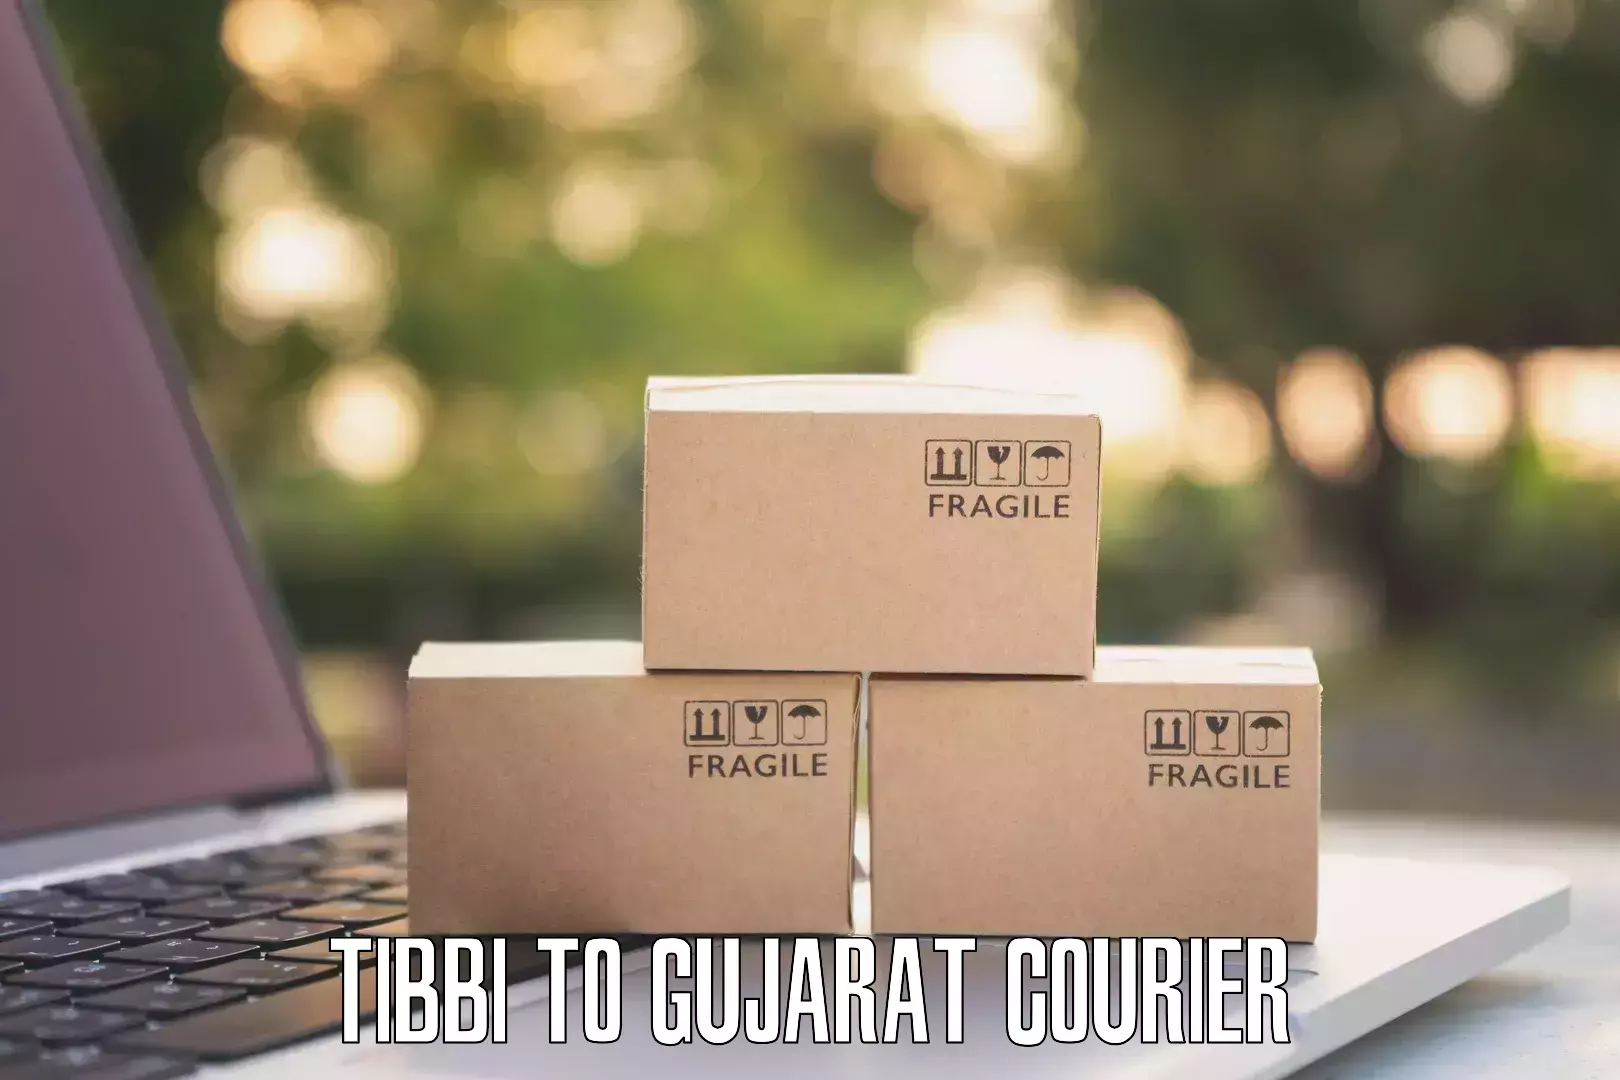 Quality courier partnerships Tibbi to Mahuva